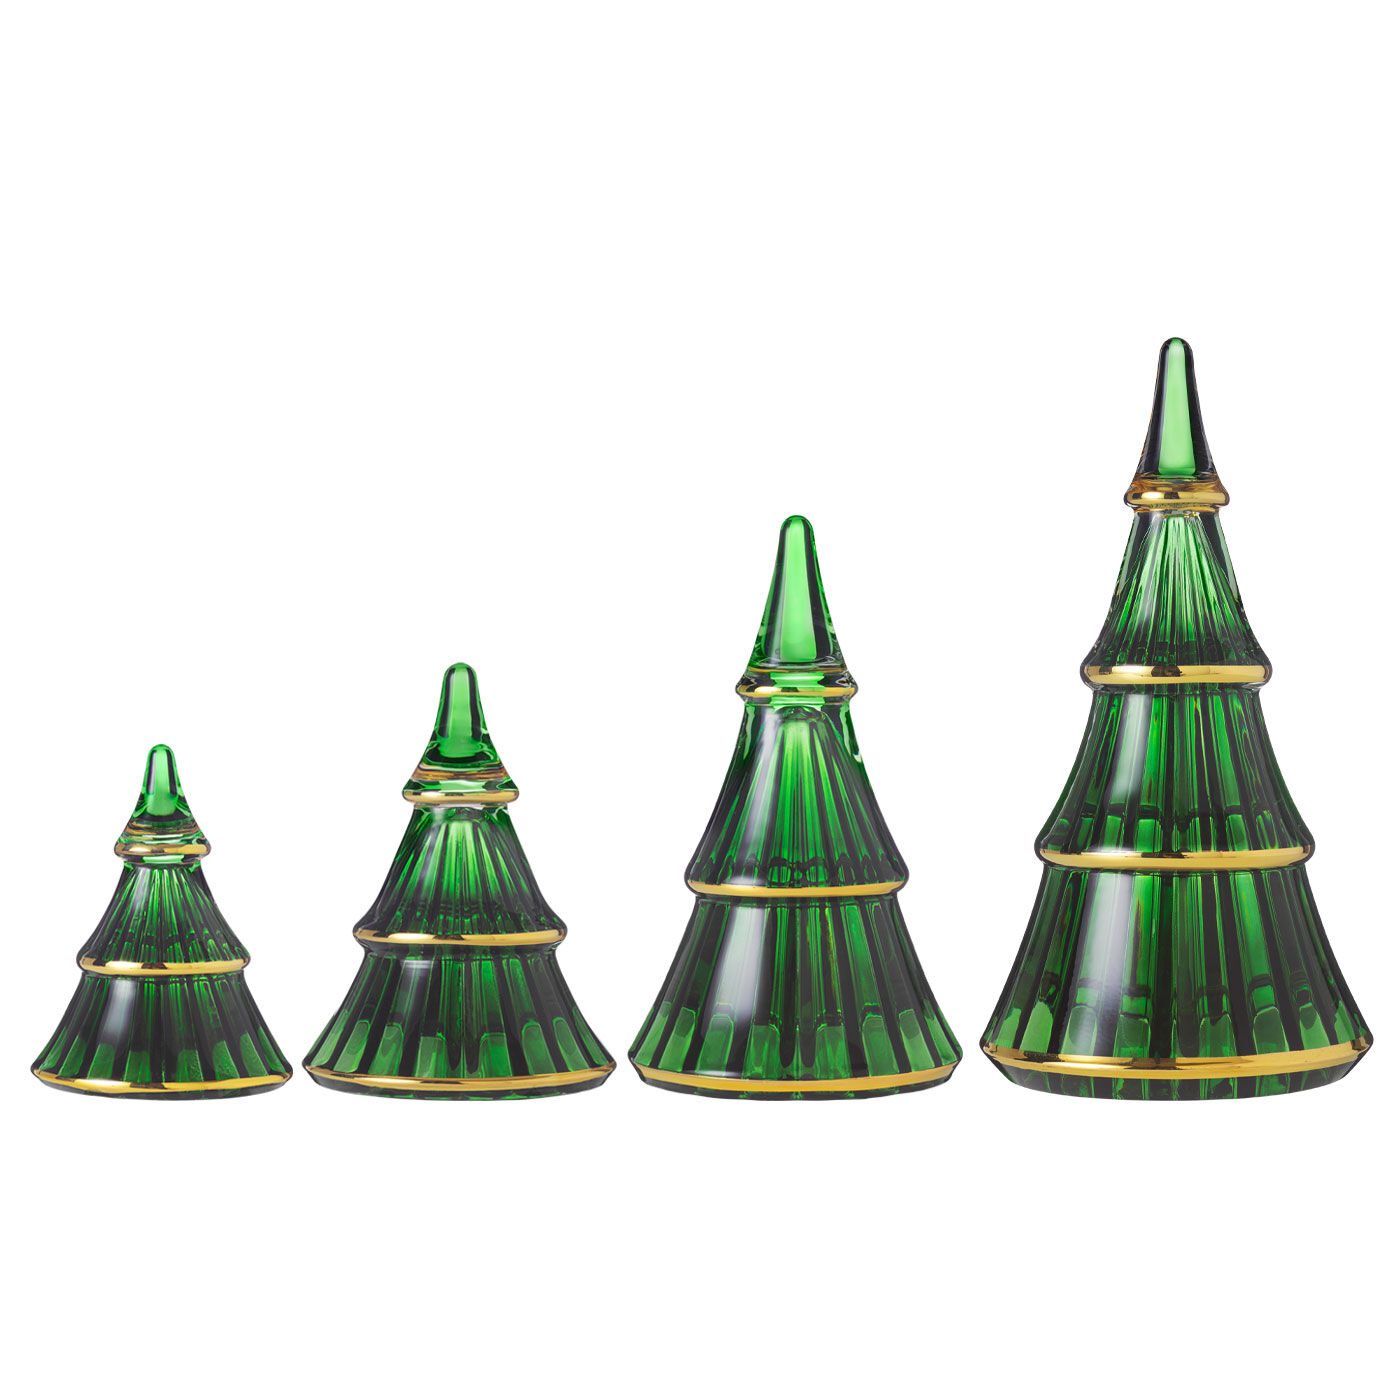 SeeMONO|ガラスのウェーブが美しい　一年中飾れるクリスマスツリー〈Ｓグリーン〉／ホルムガード|左から1番目がSサイズです。